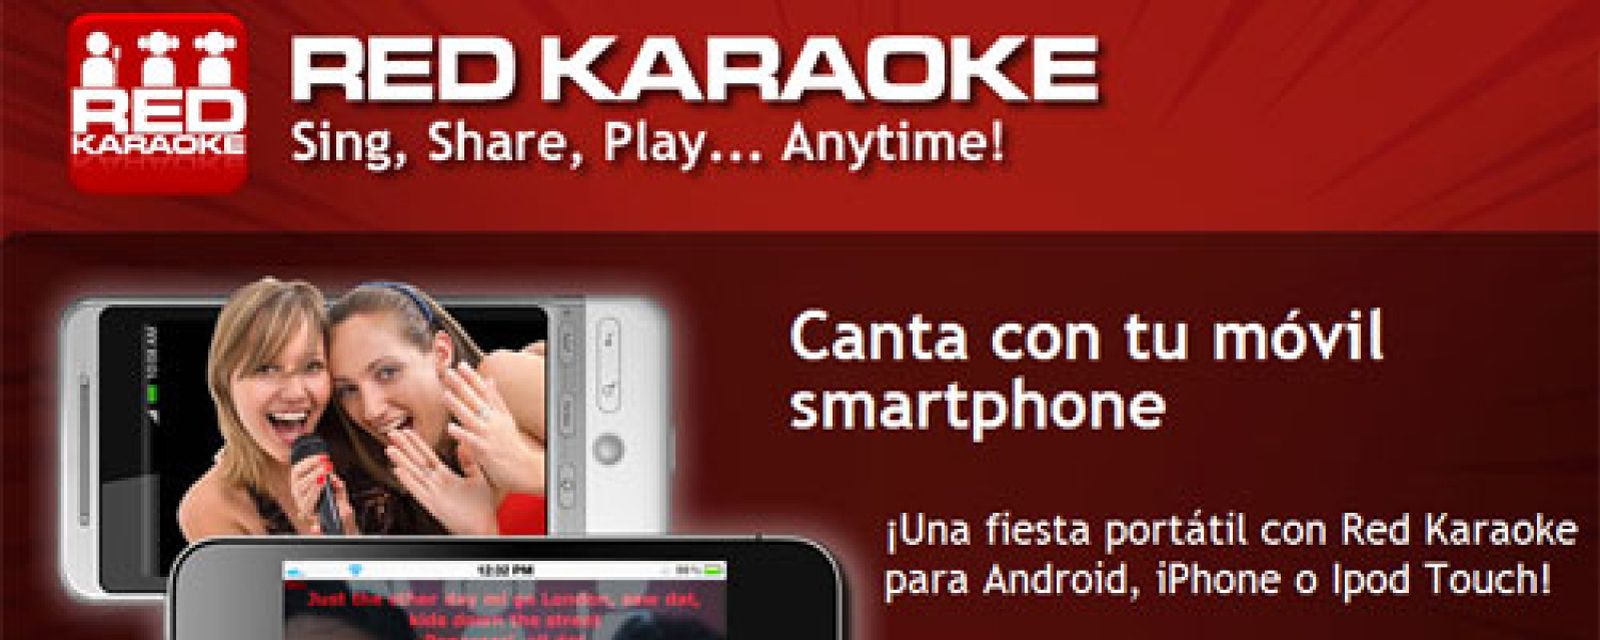 Foto: Red Karaoke 'moviliza' su repertorio para llegar a todos los smartphones